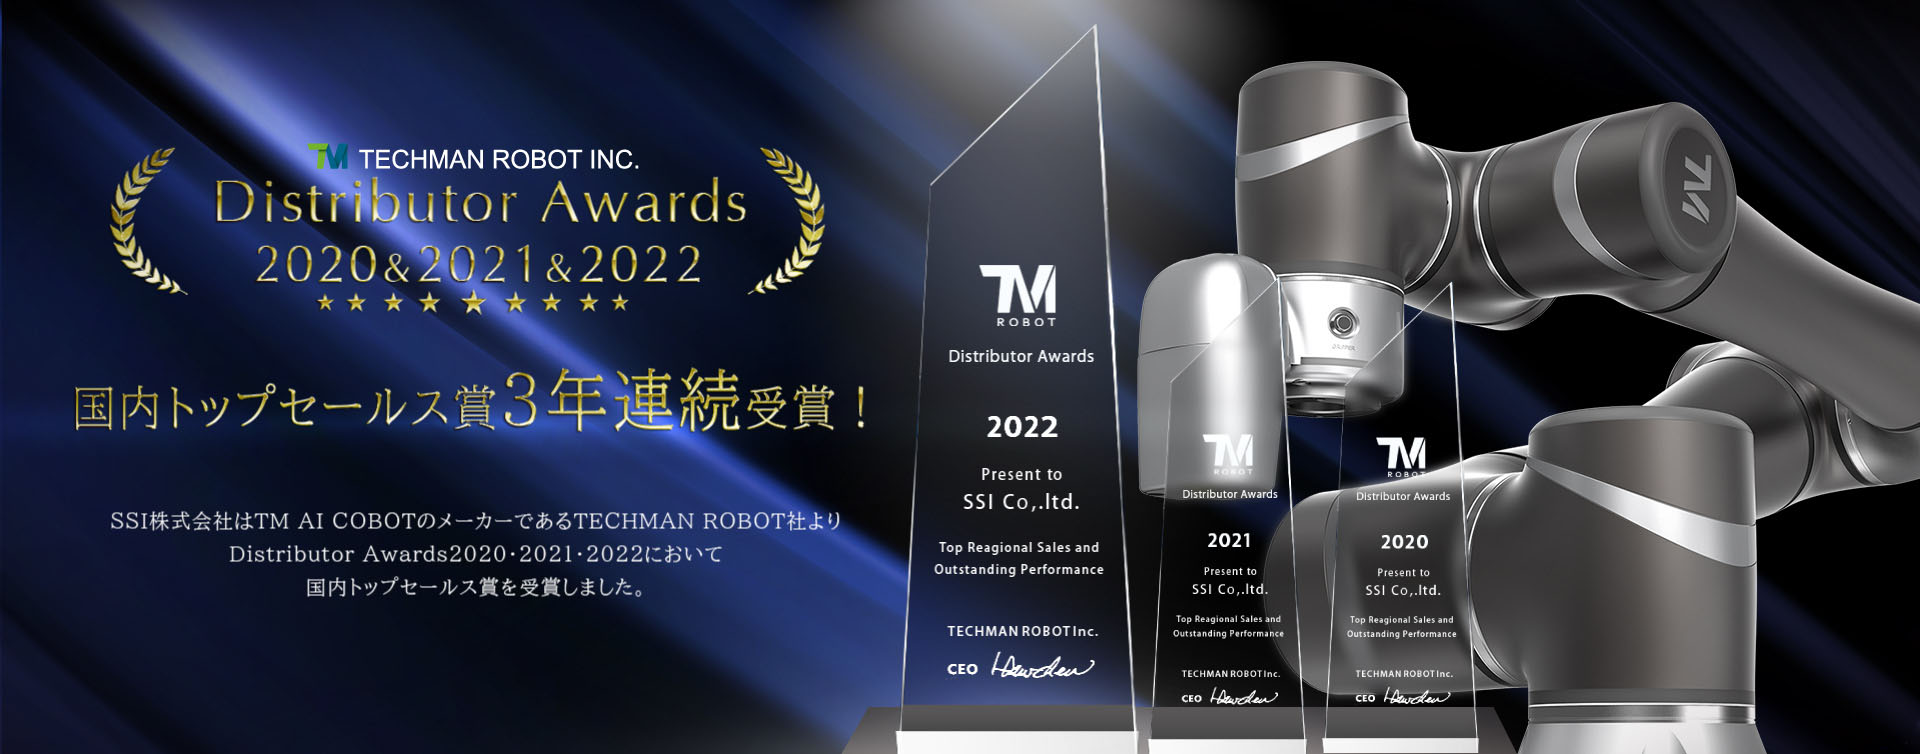 SSI株式会社はTMロボットのメーカーであるTechman Robot社より、Distributor Awards2020,2021において金賞を受賞いたしました